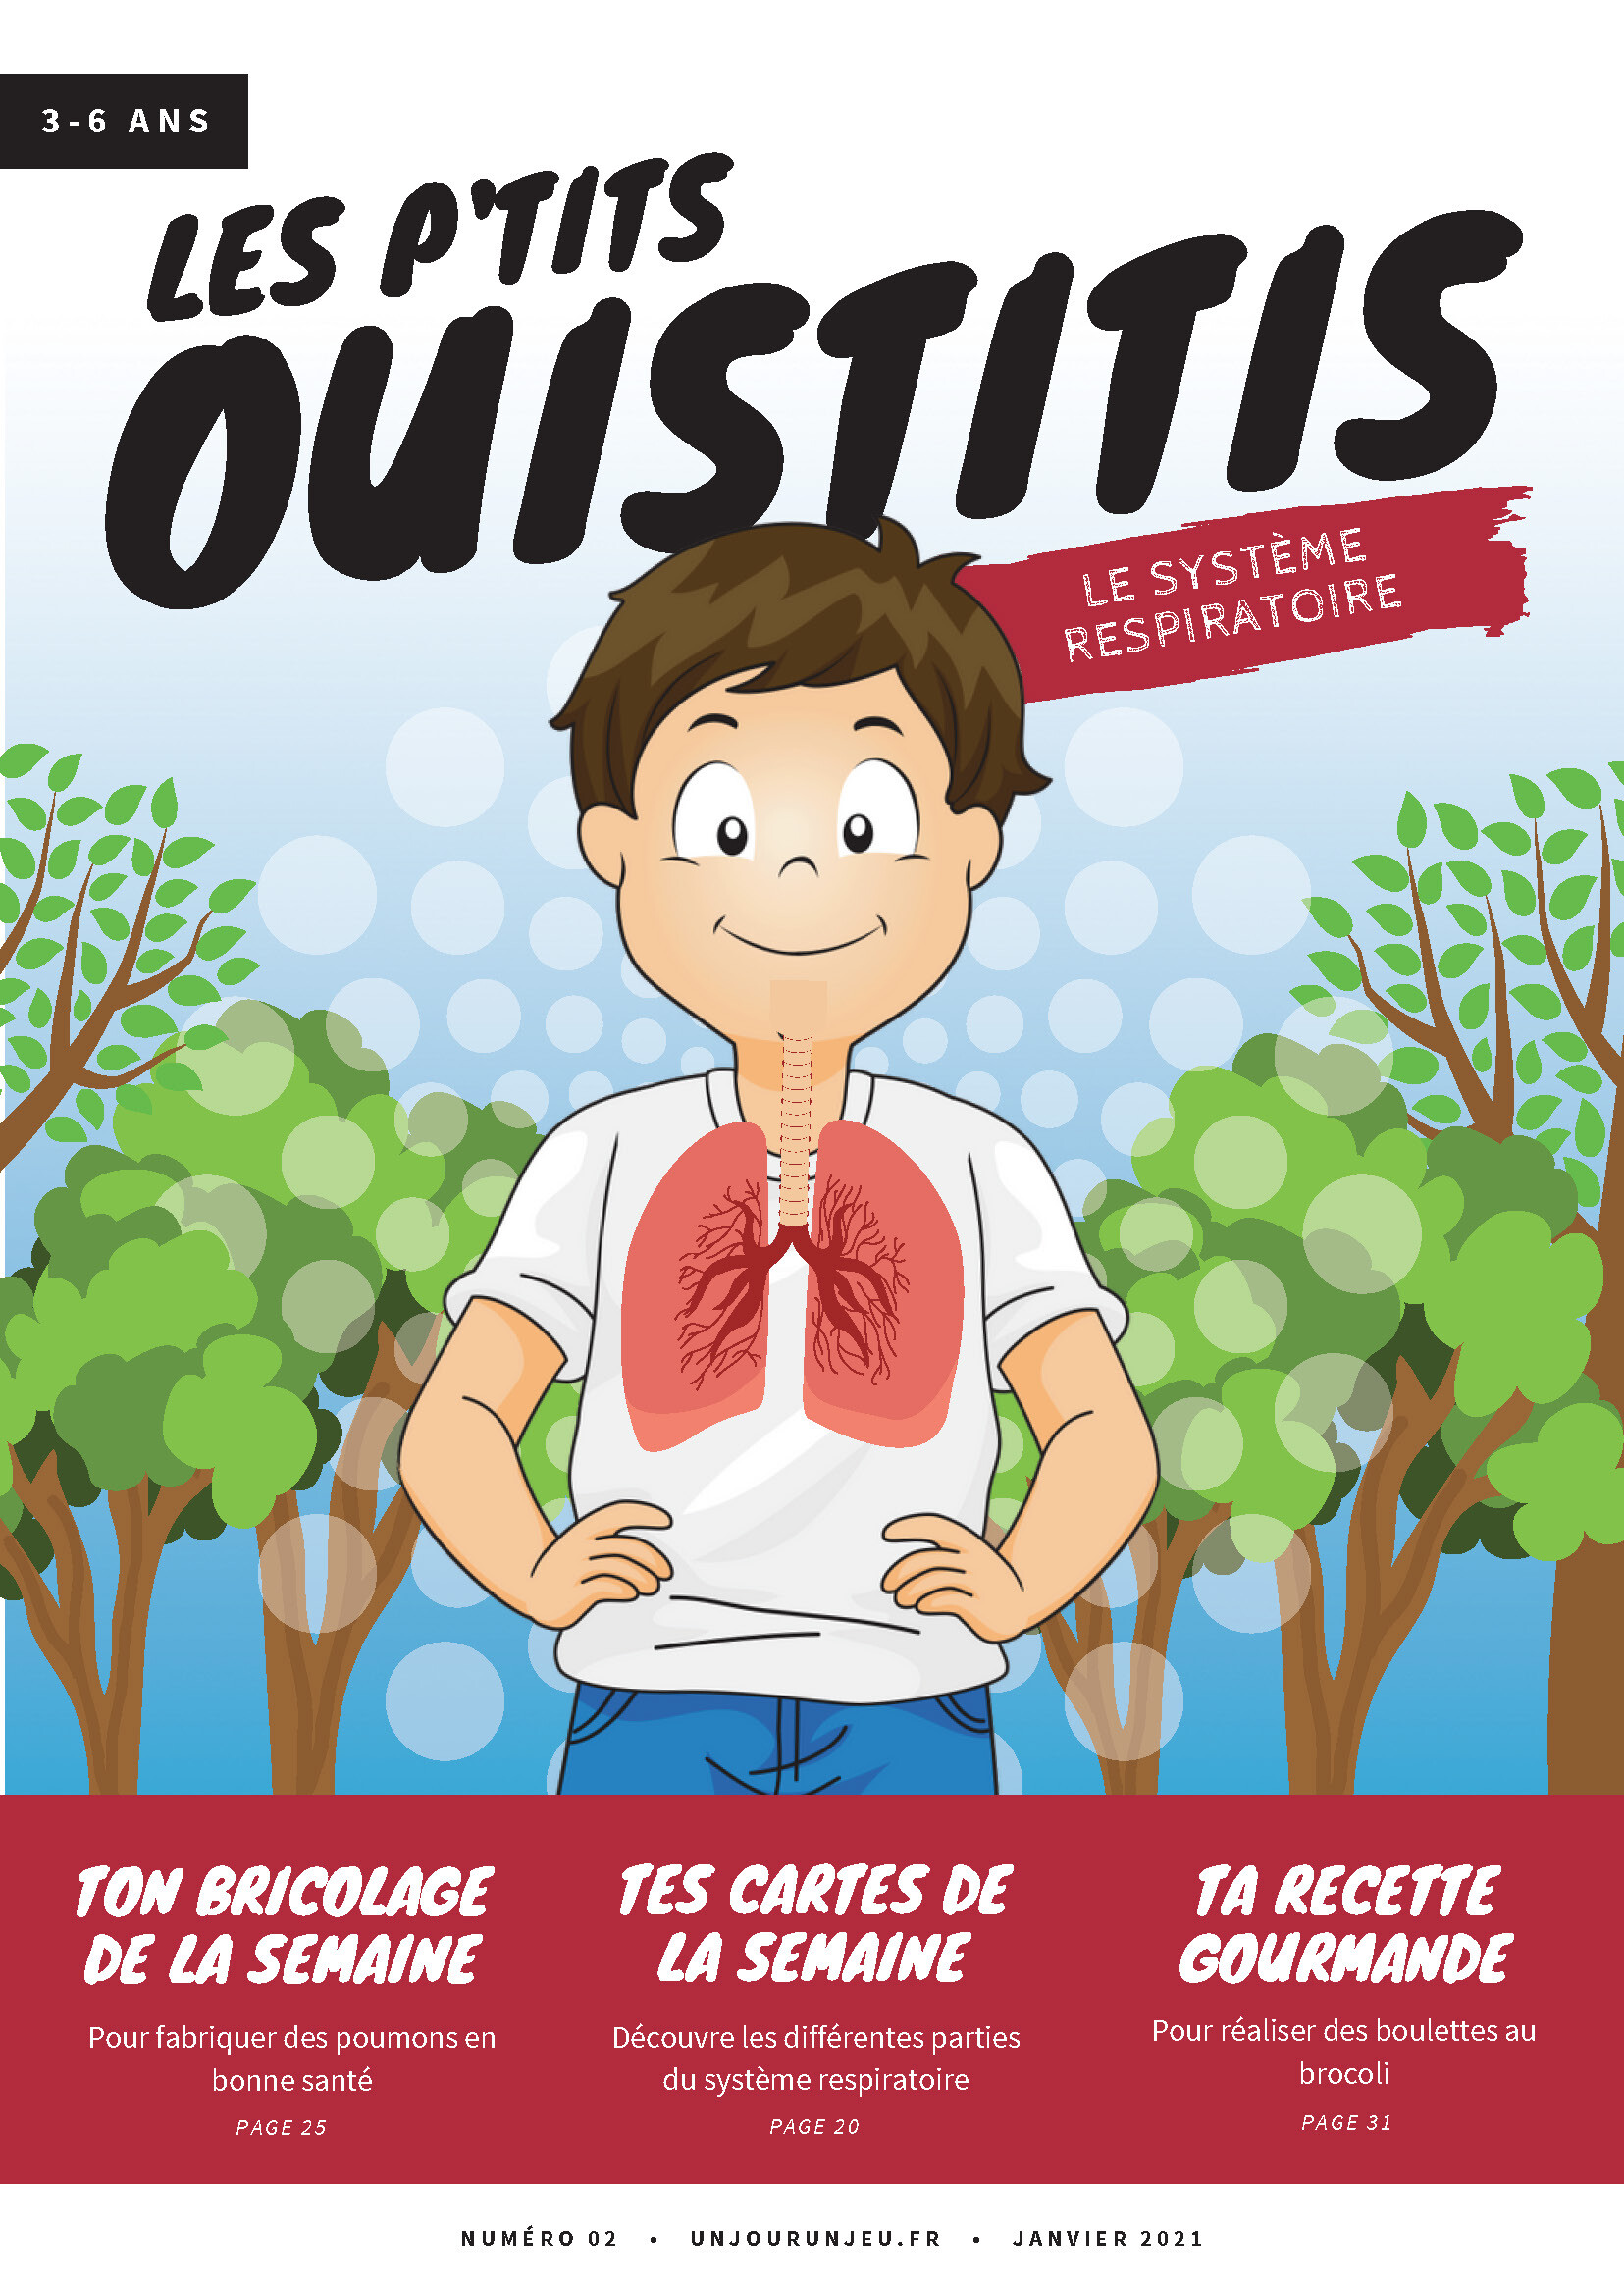 Les P’tits Ouistitis et le système respiratoire